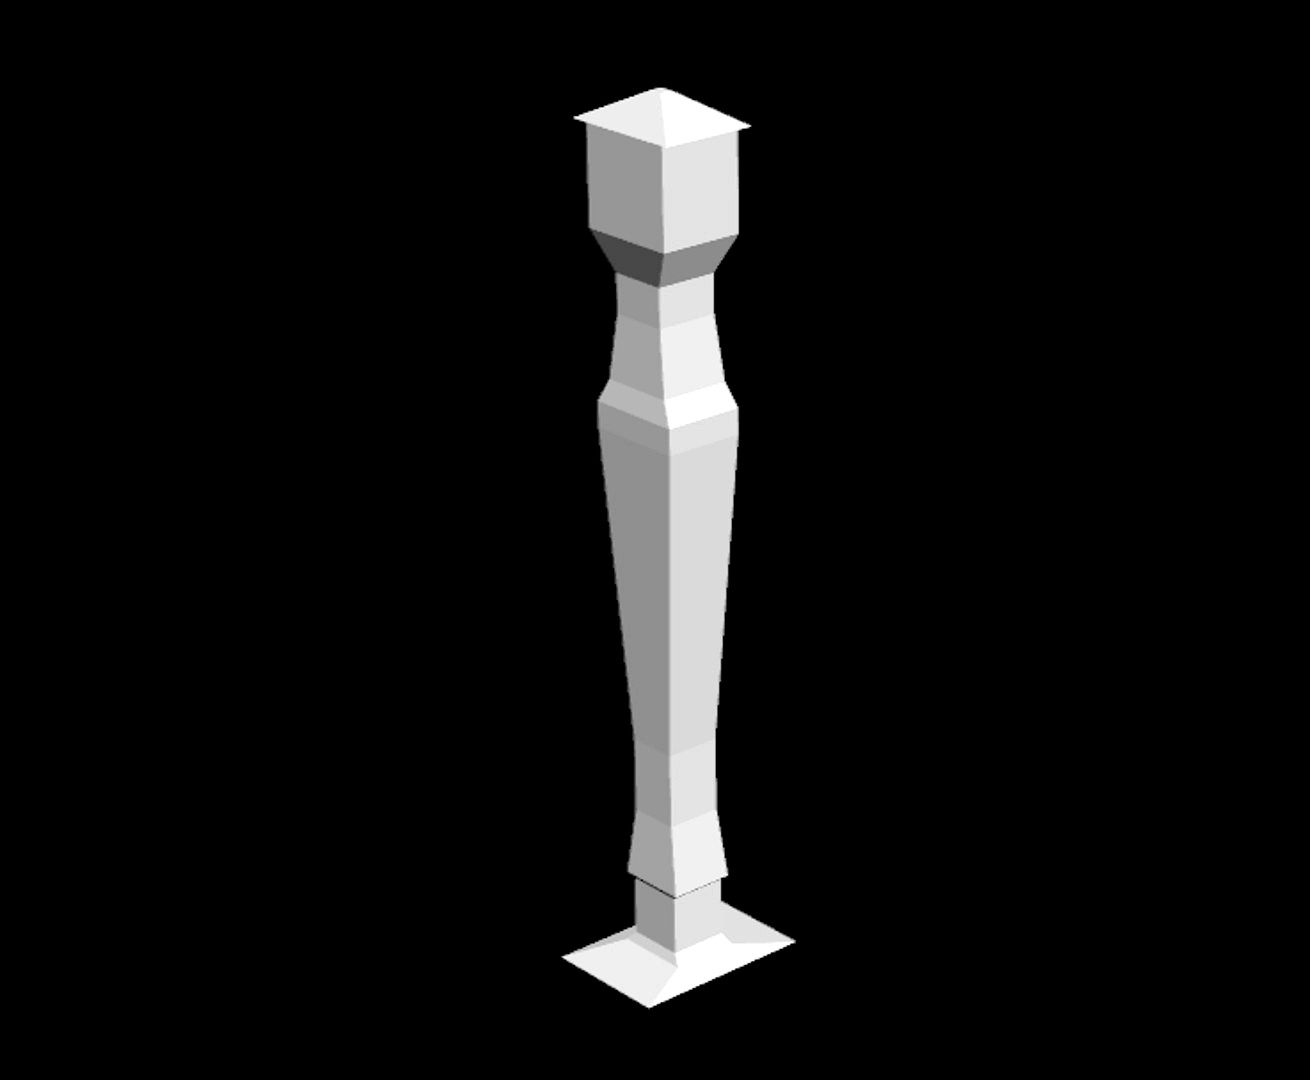 A Pole